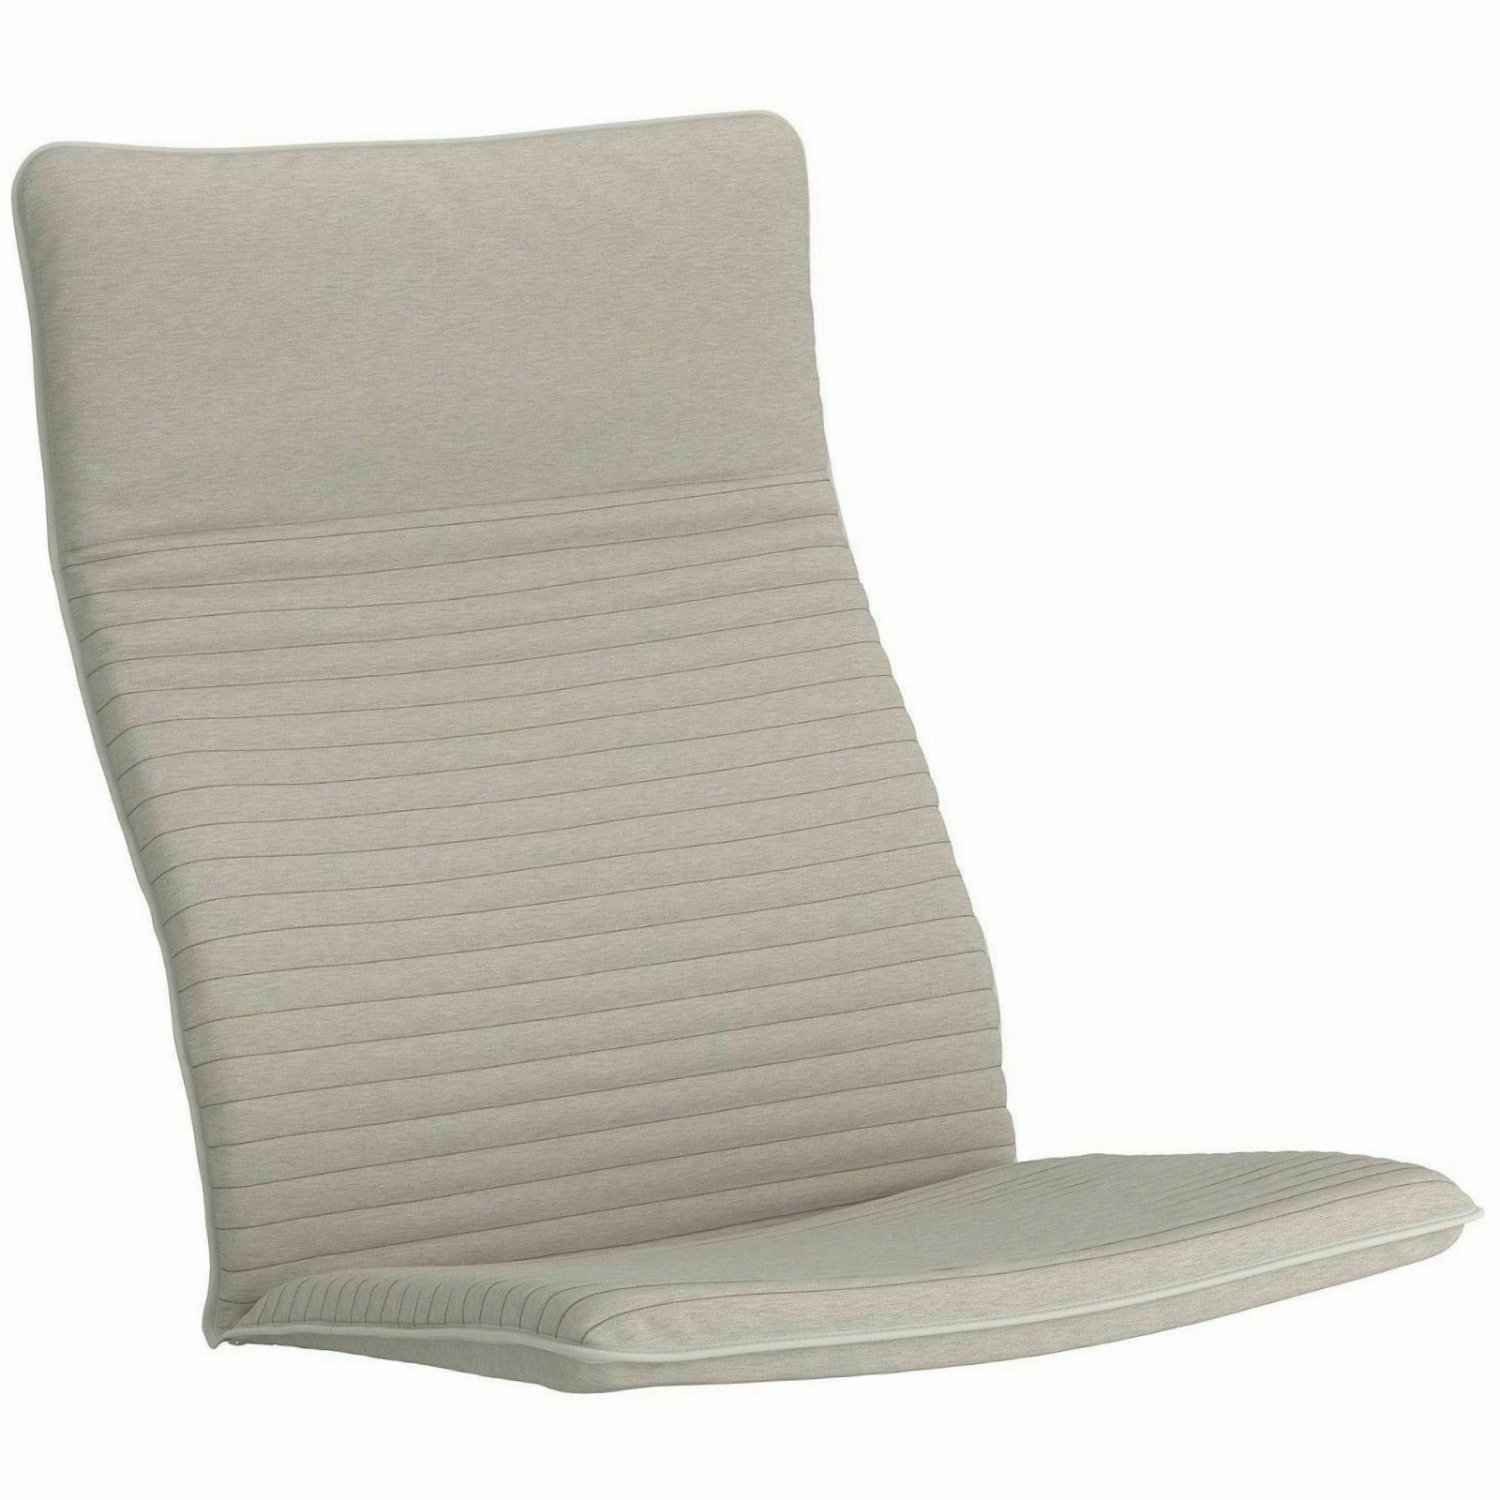 POÄNG Chair cushion, Knisa light beige - IKEA